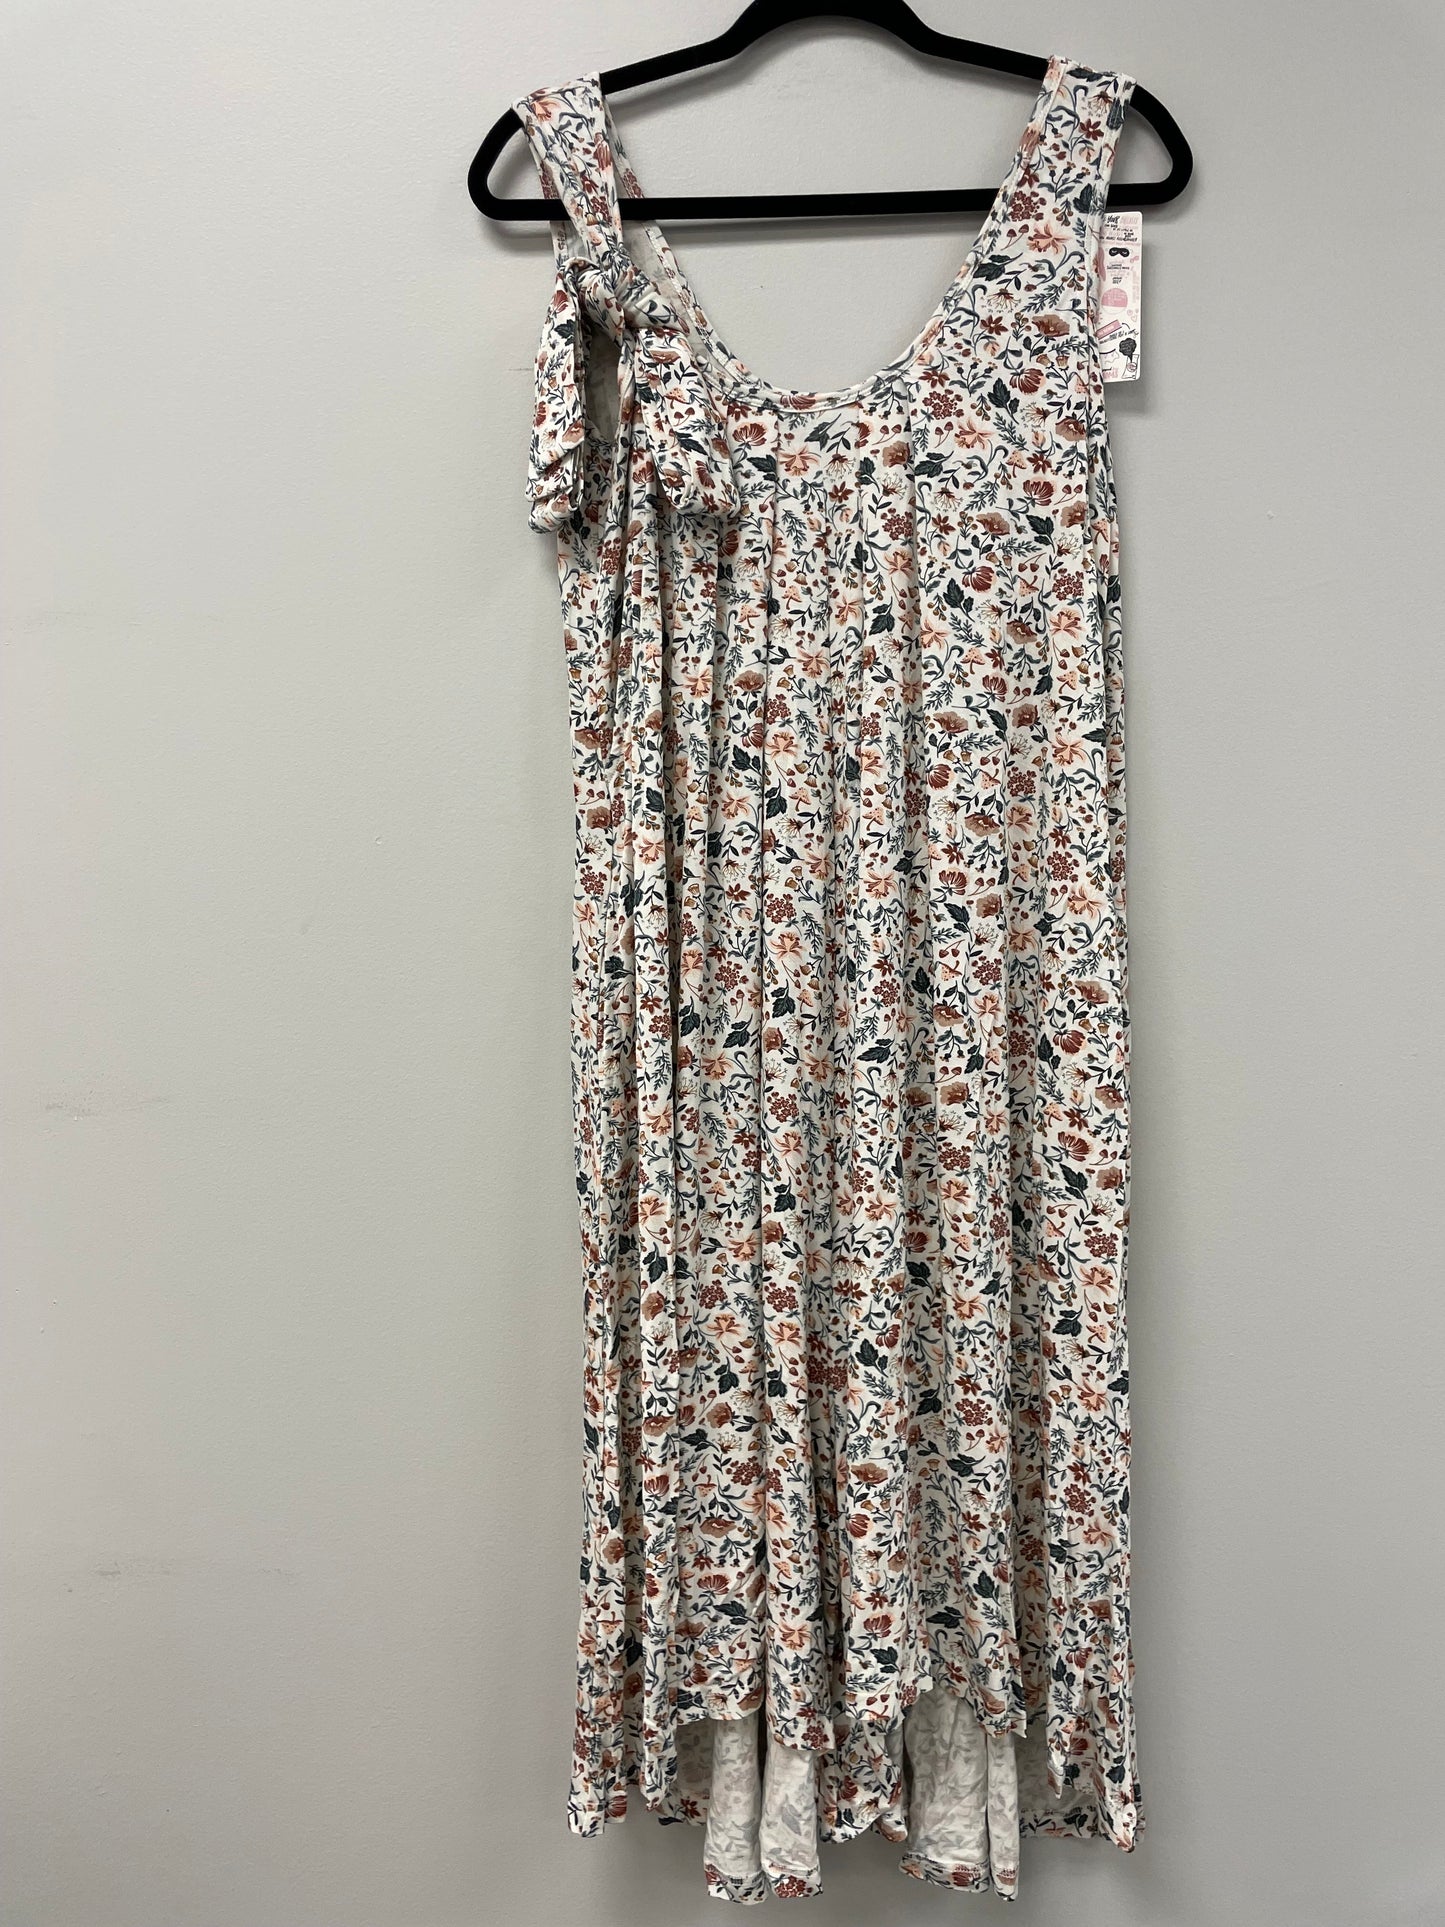 Outlet 5776 - Latched Mama Printed Nursing Romper - Wonderland Floral - Petite